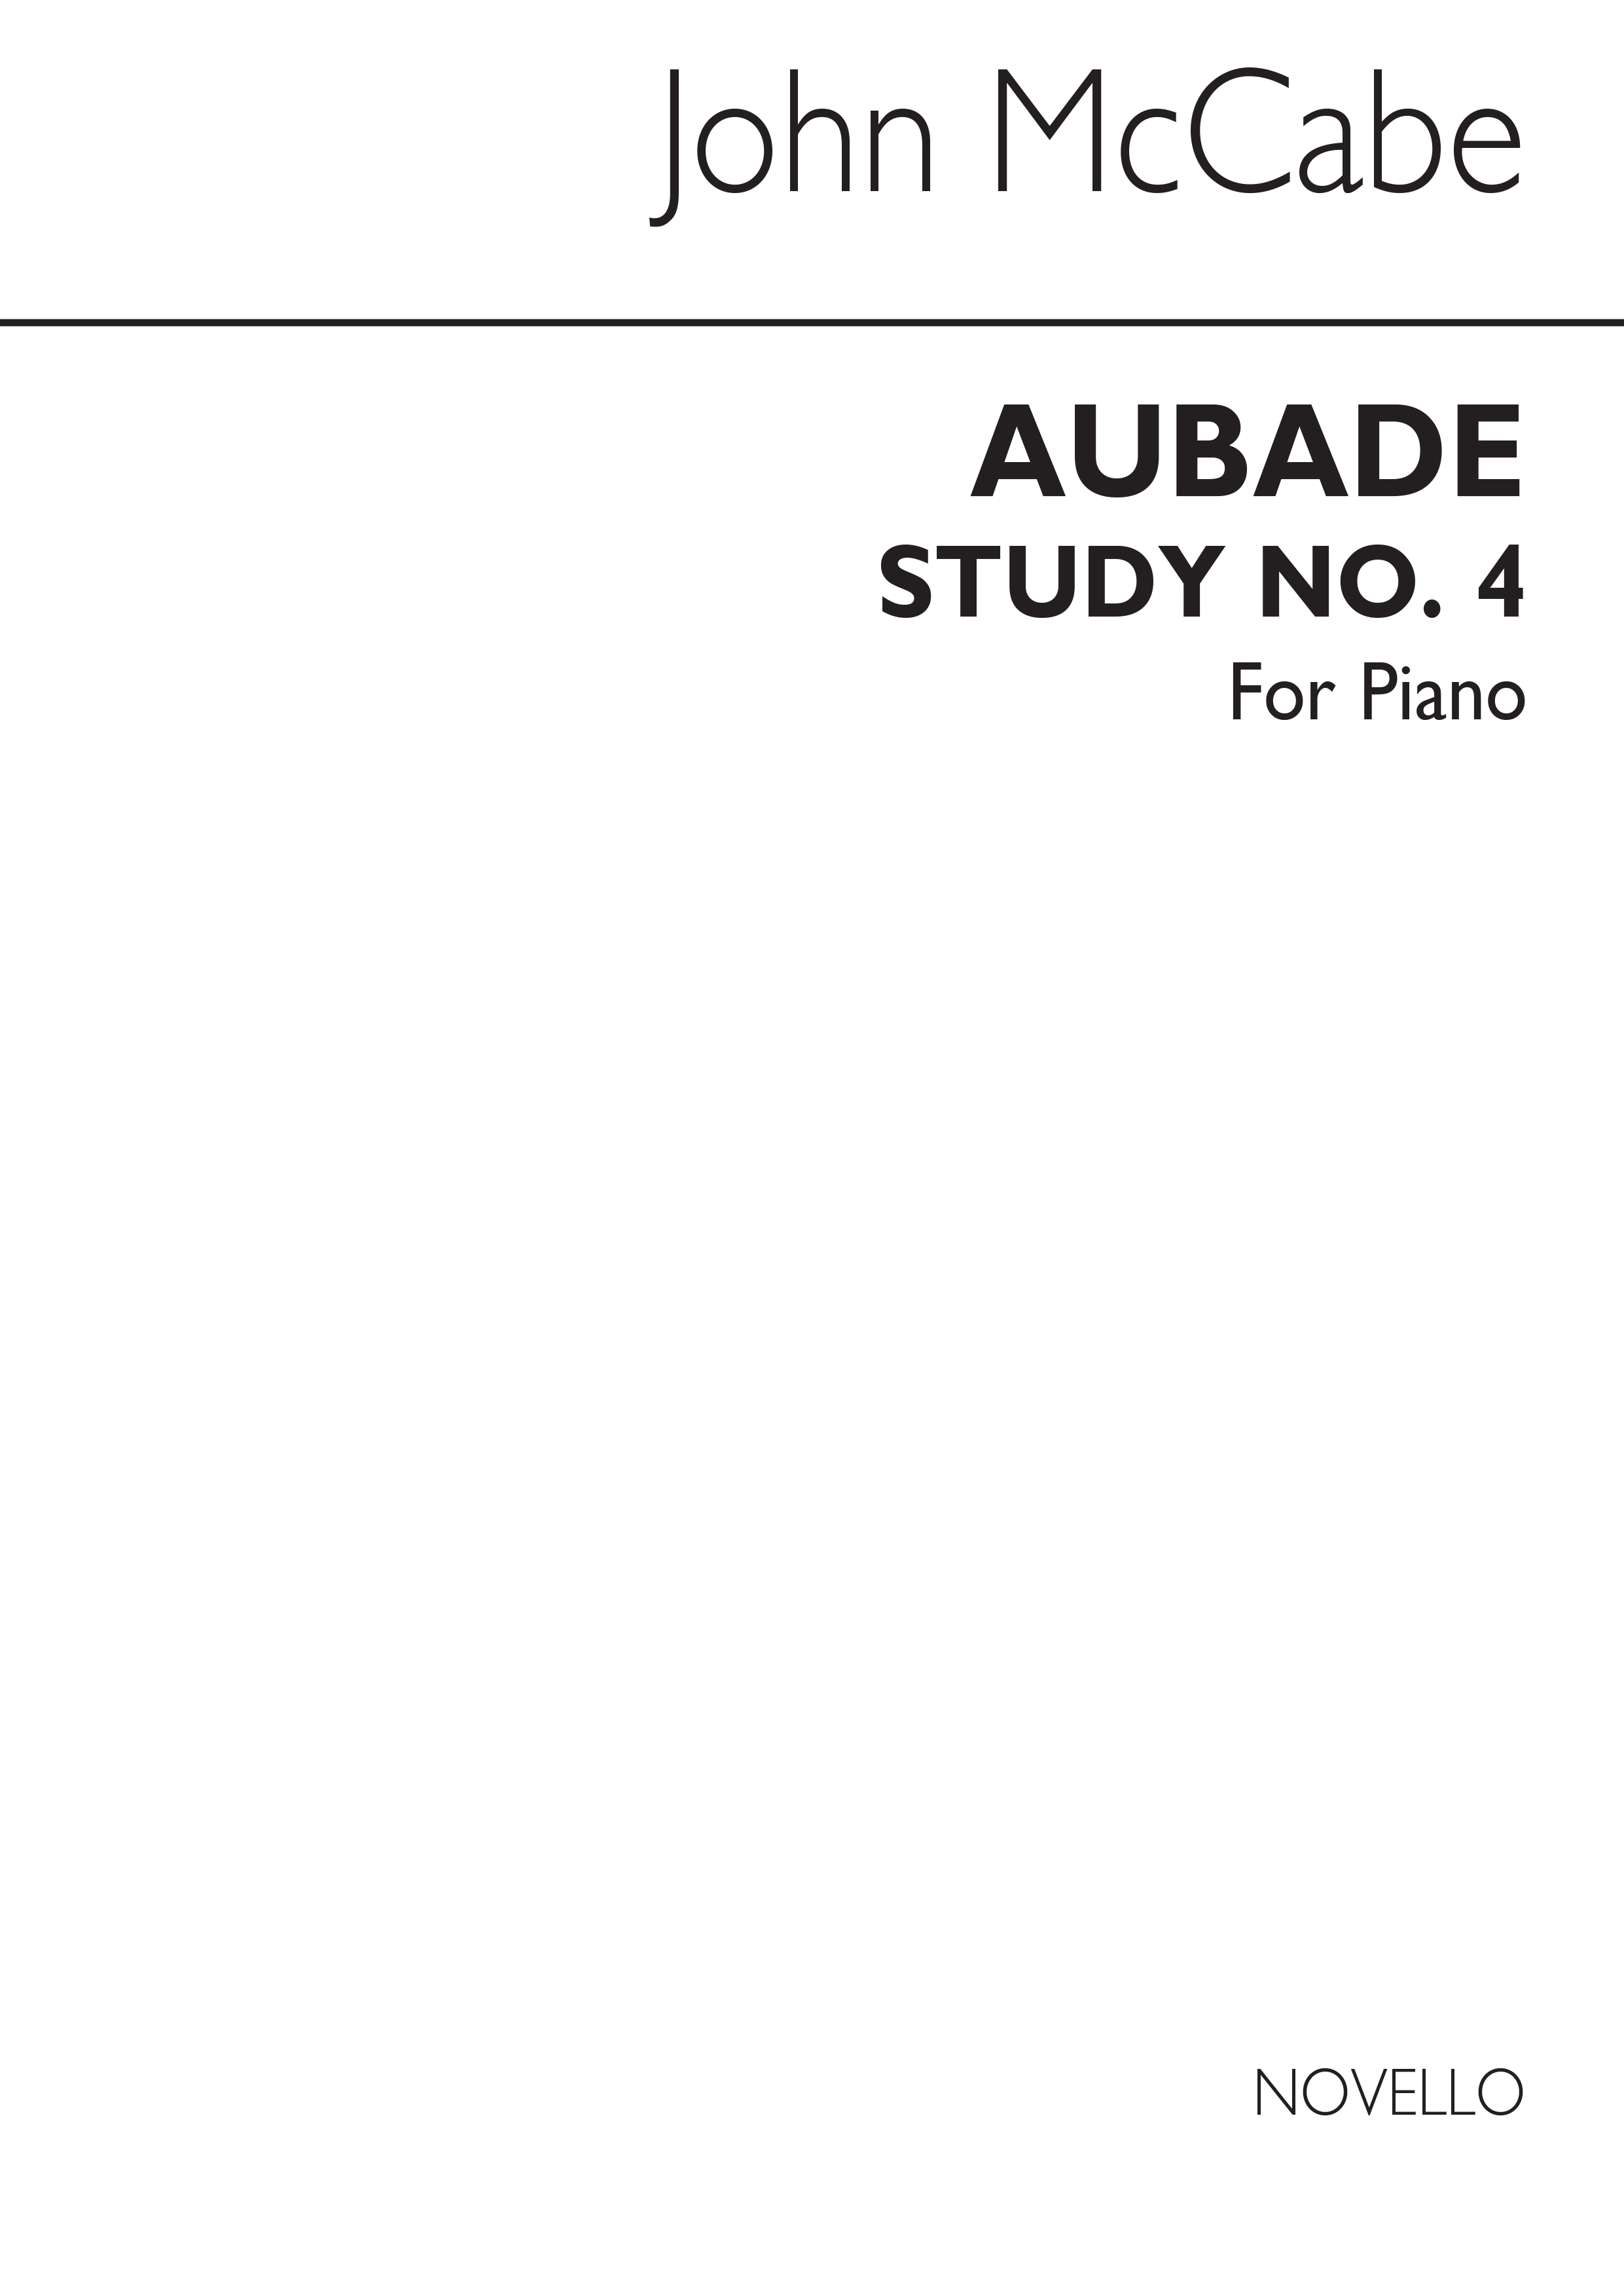 McCabe: Aubade Study No.4 for Piano